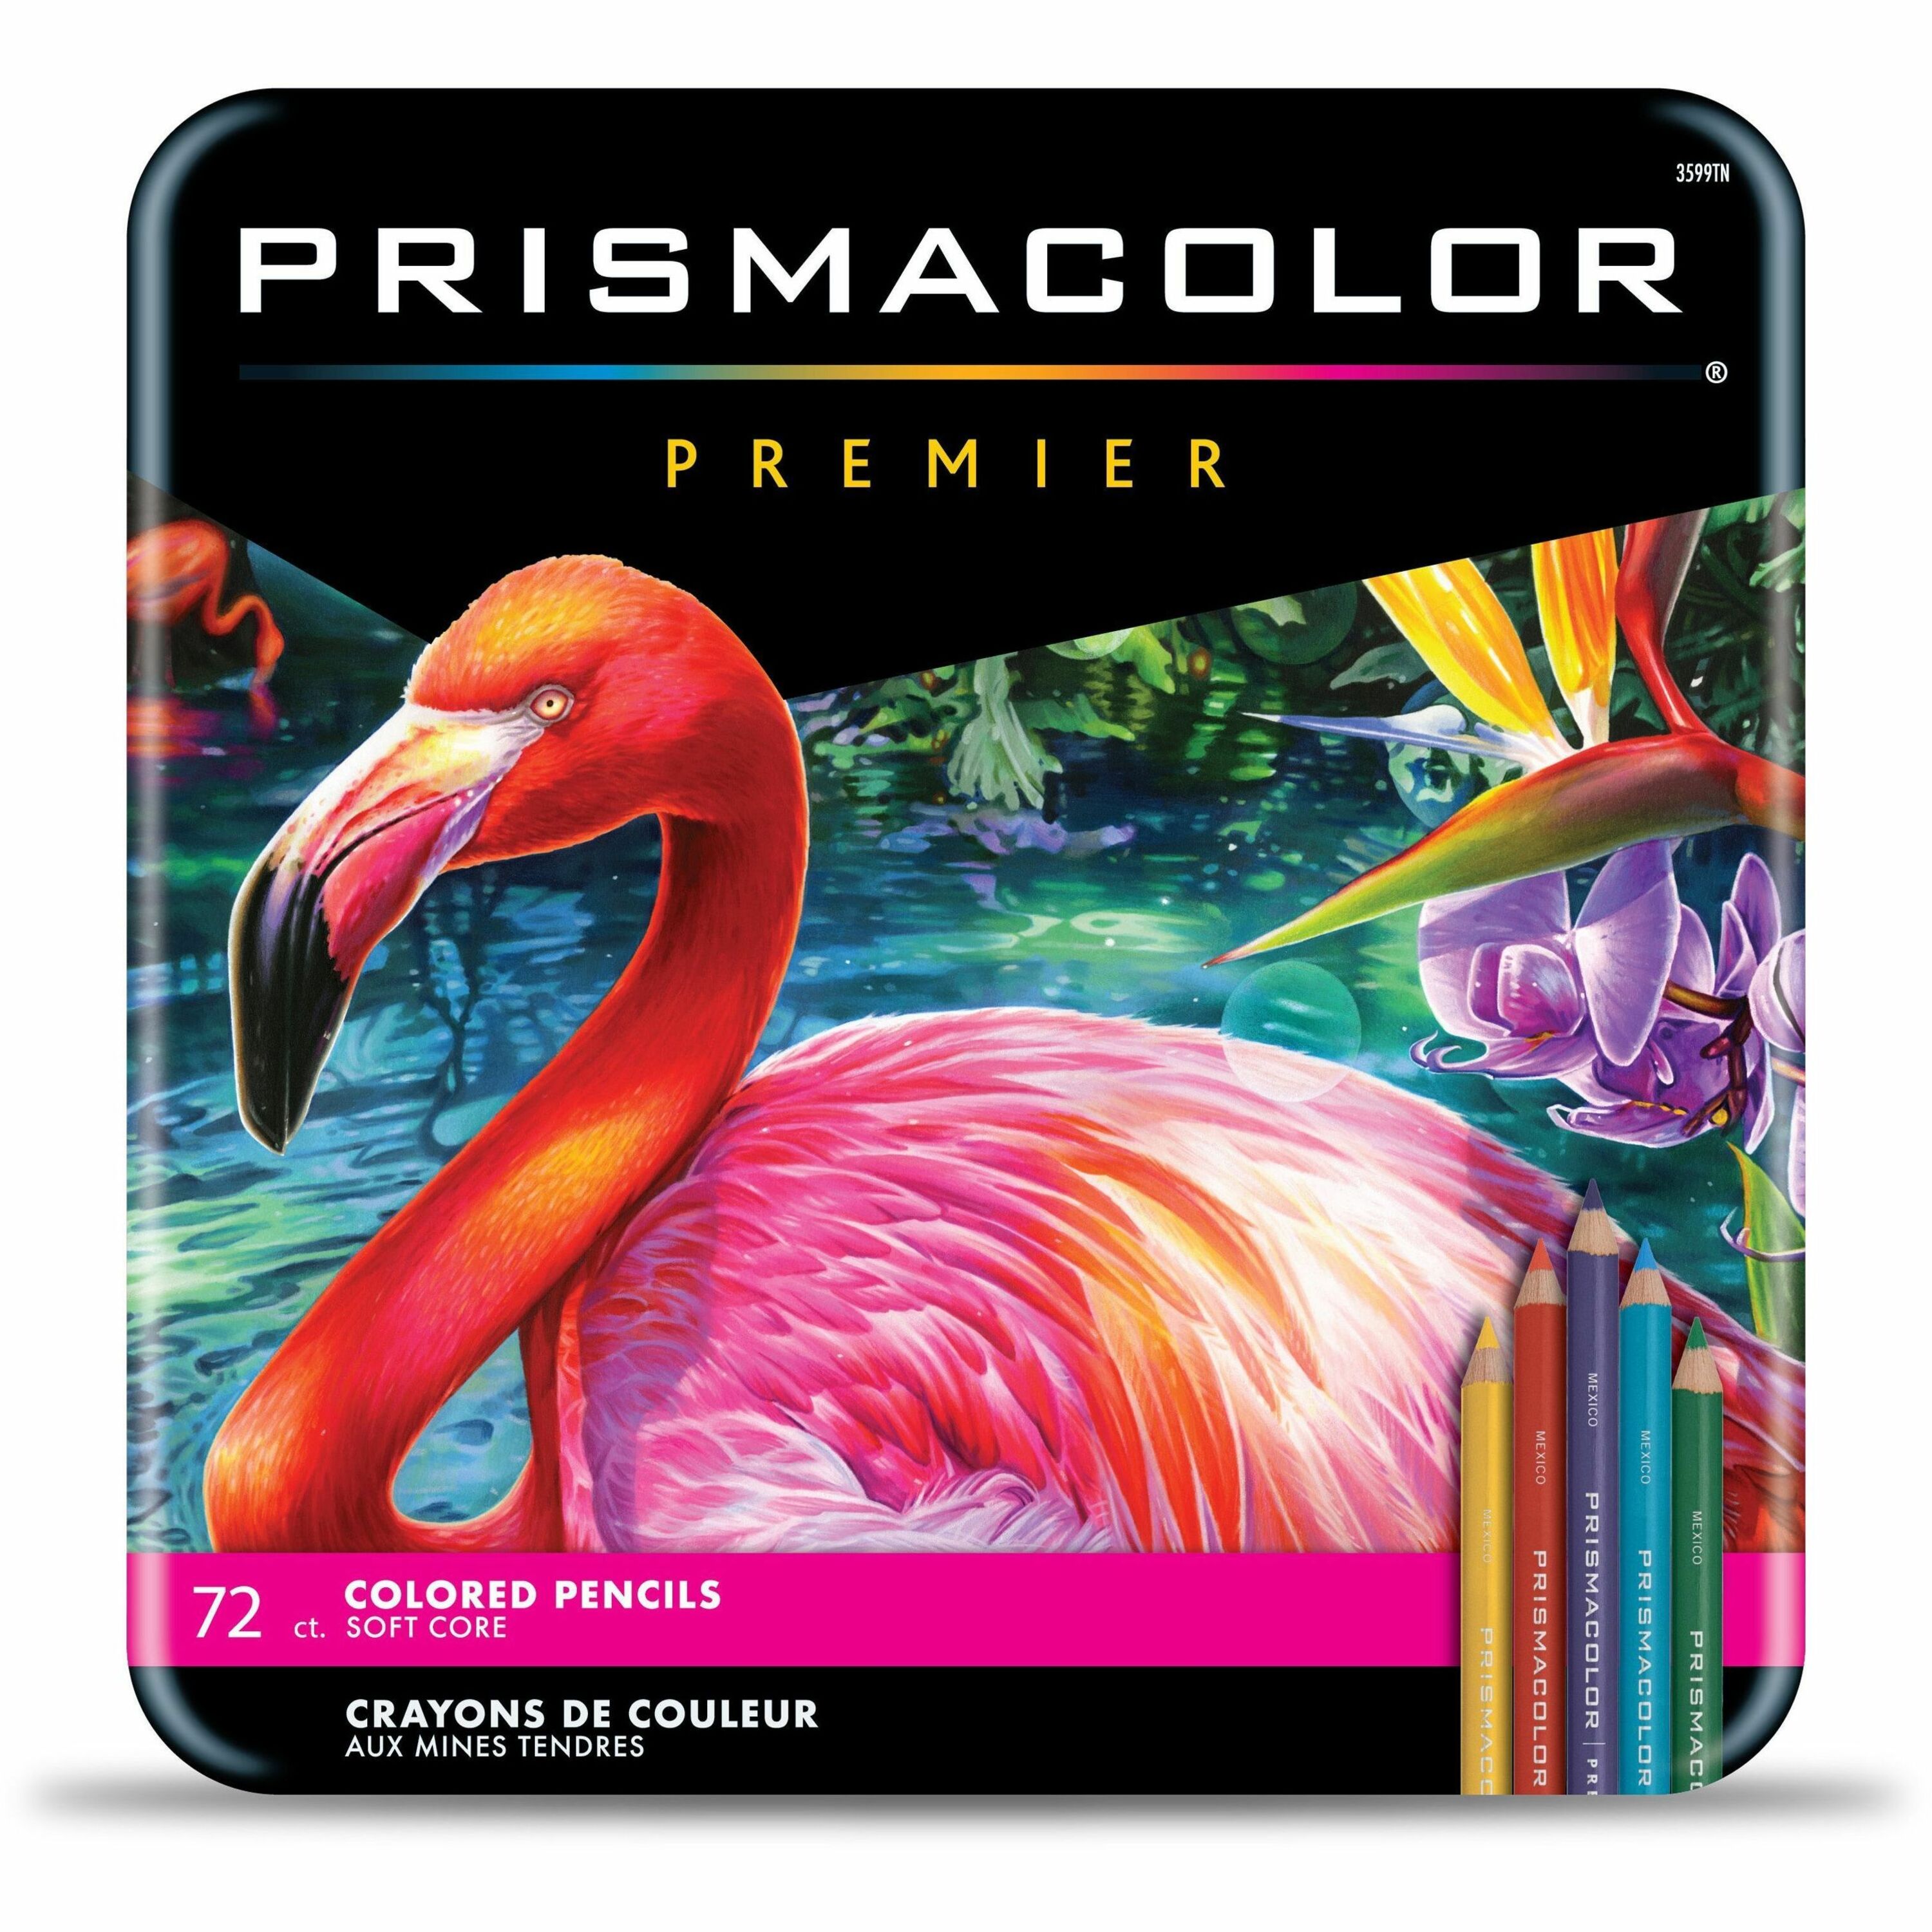 Prismacolor premier 150 ct. Colored pencils New - Art Pencils